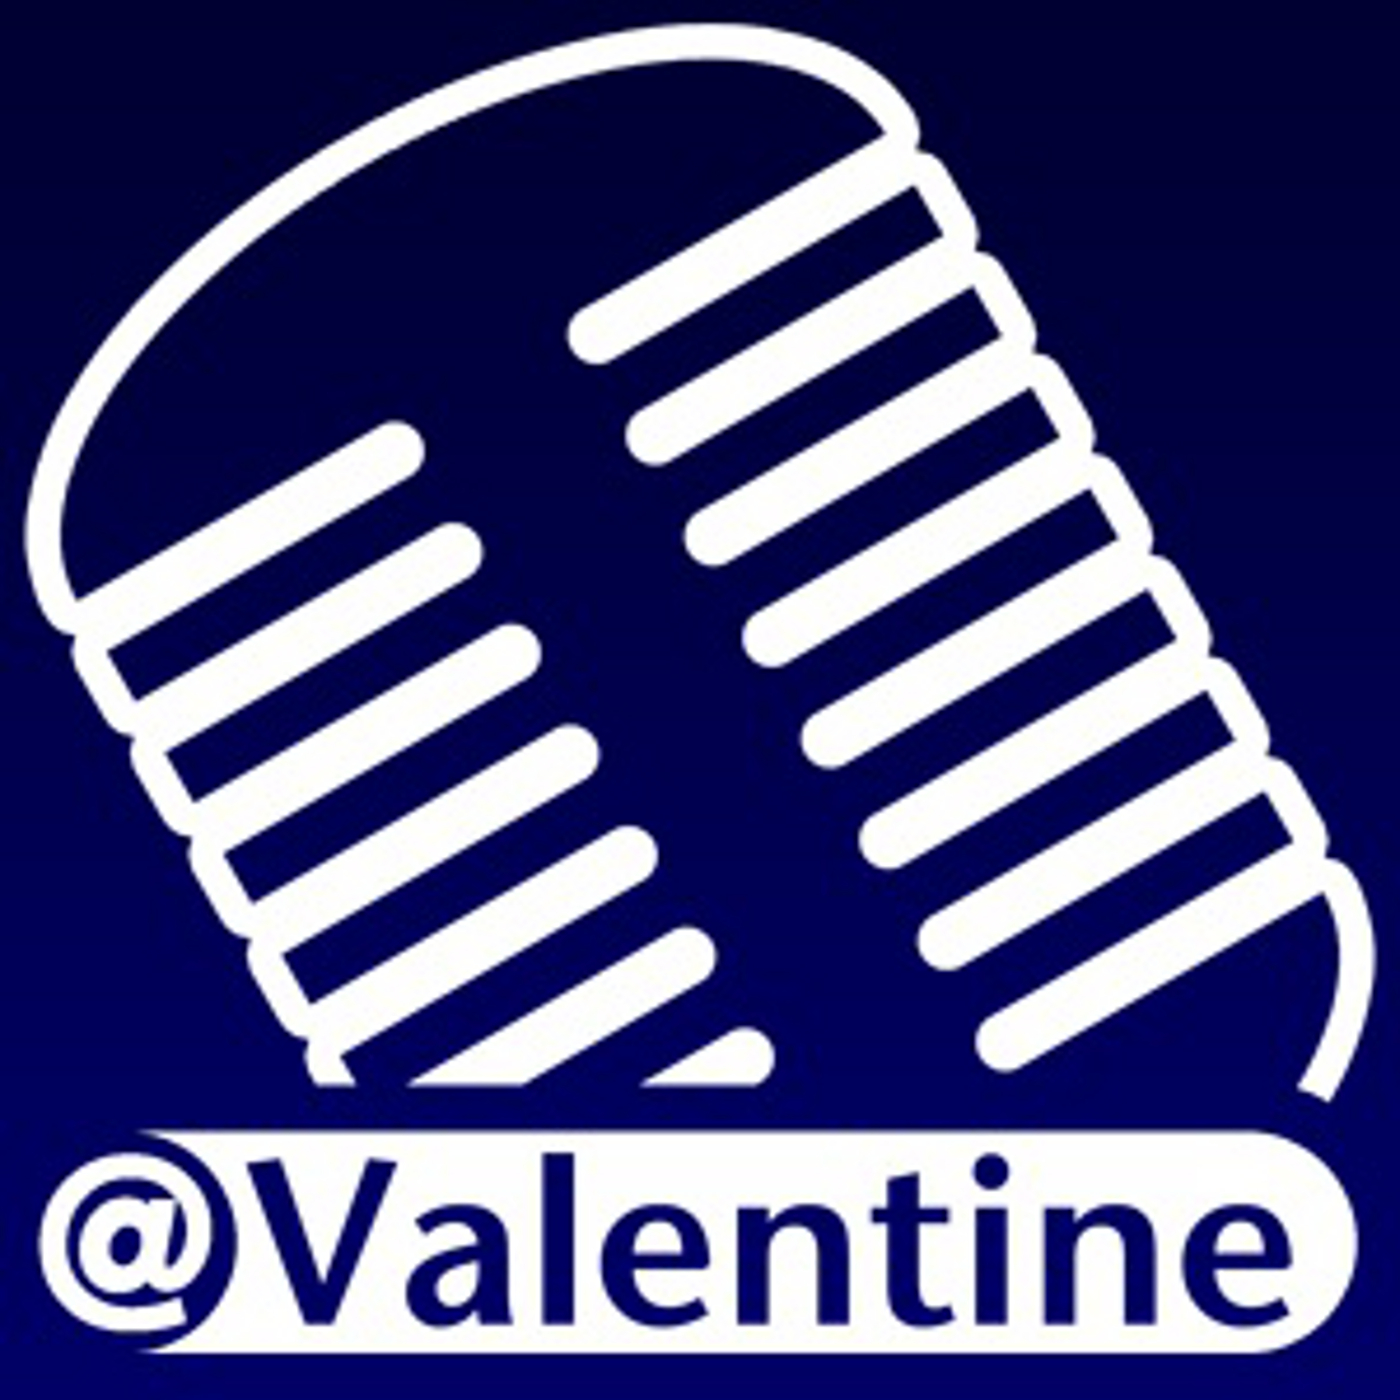 ValentineCast Episode #229 - Ballin'